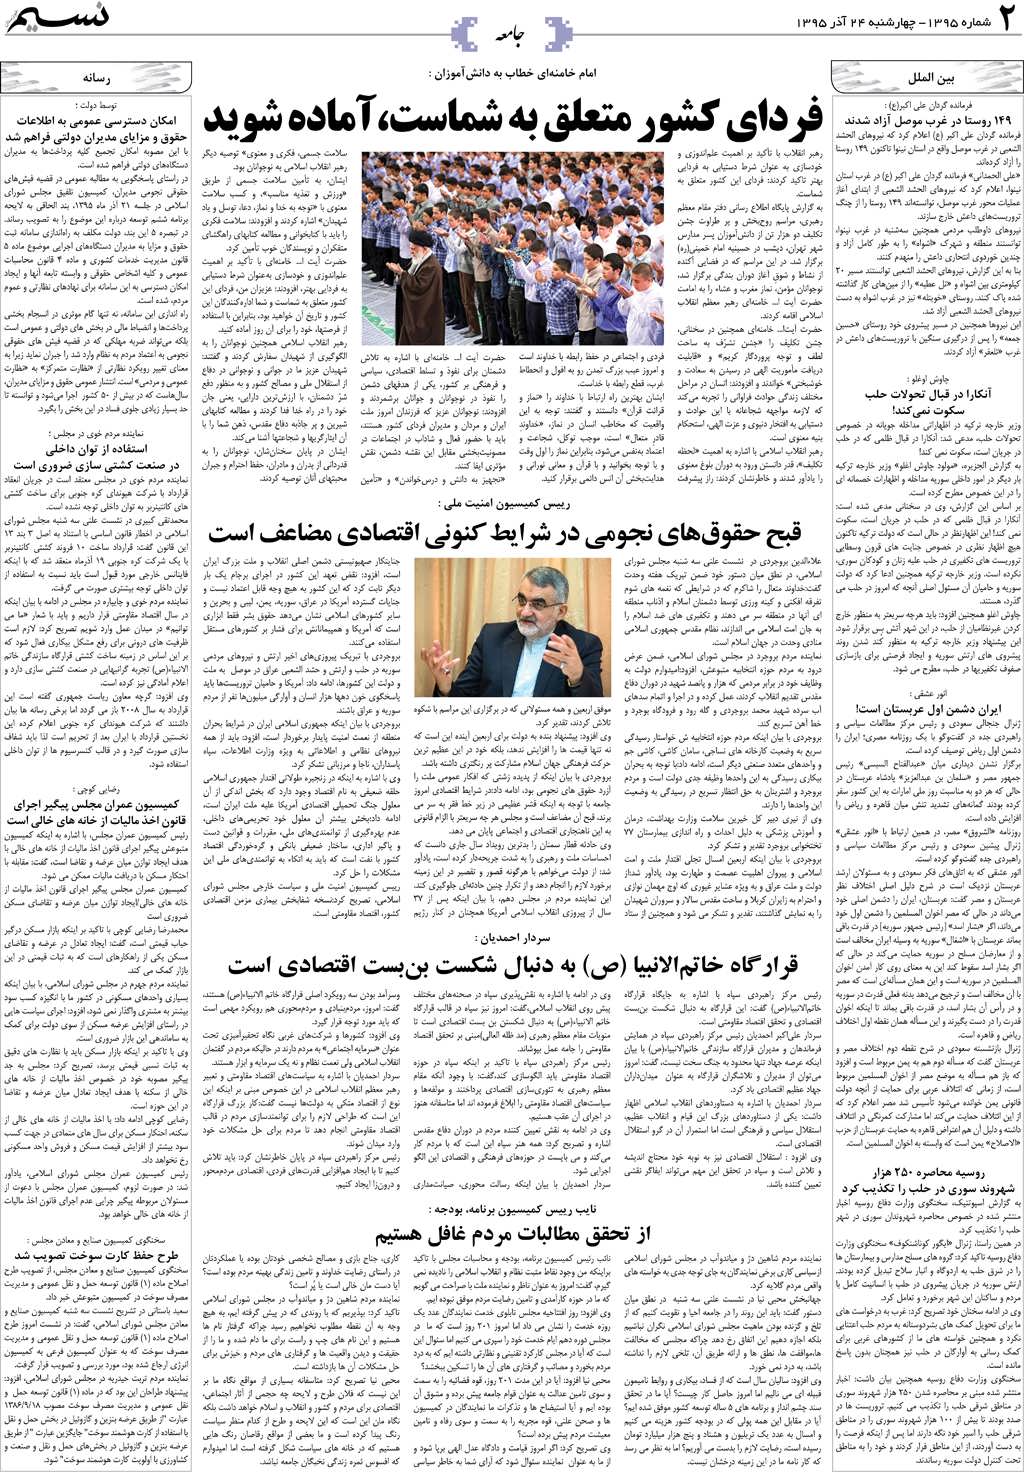 صفحه جامعه روزنامه نسیم شماره 1395